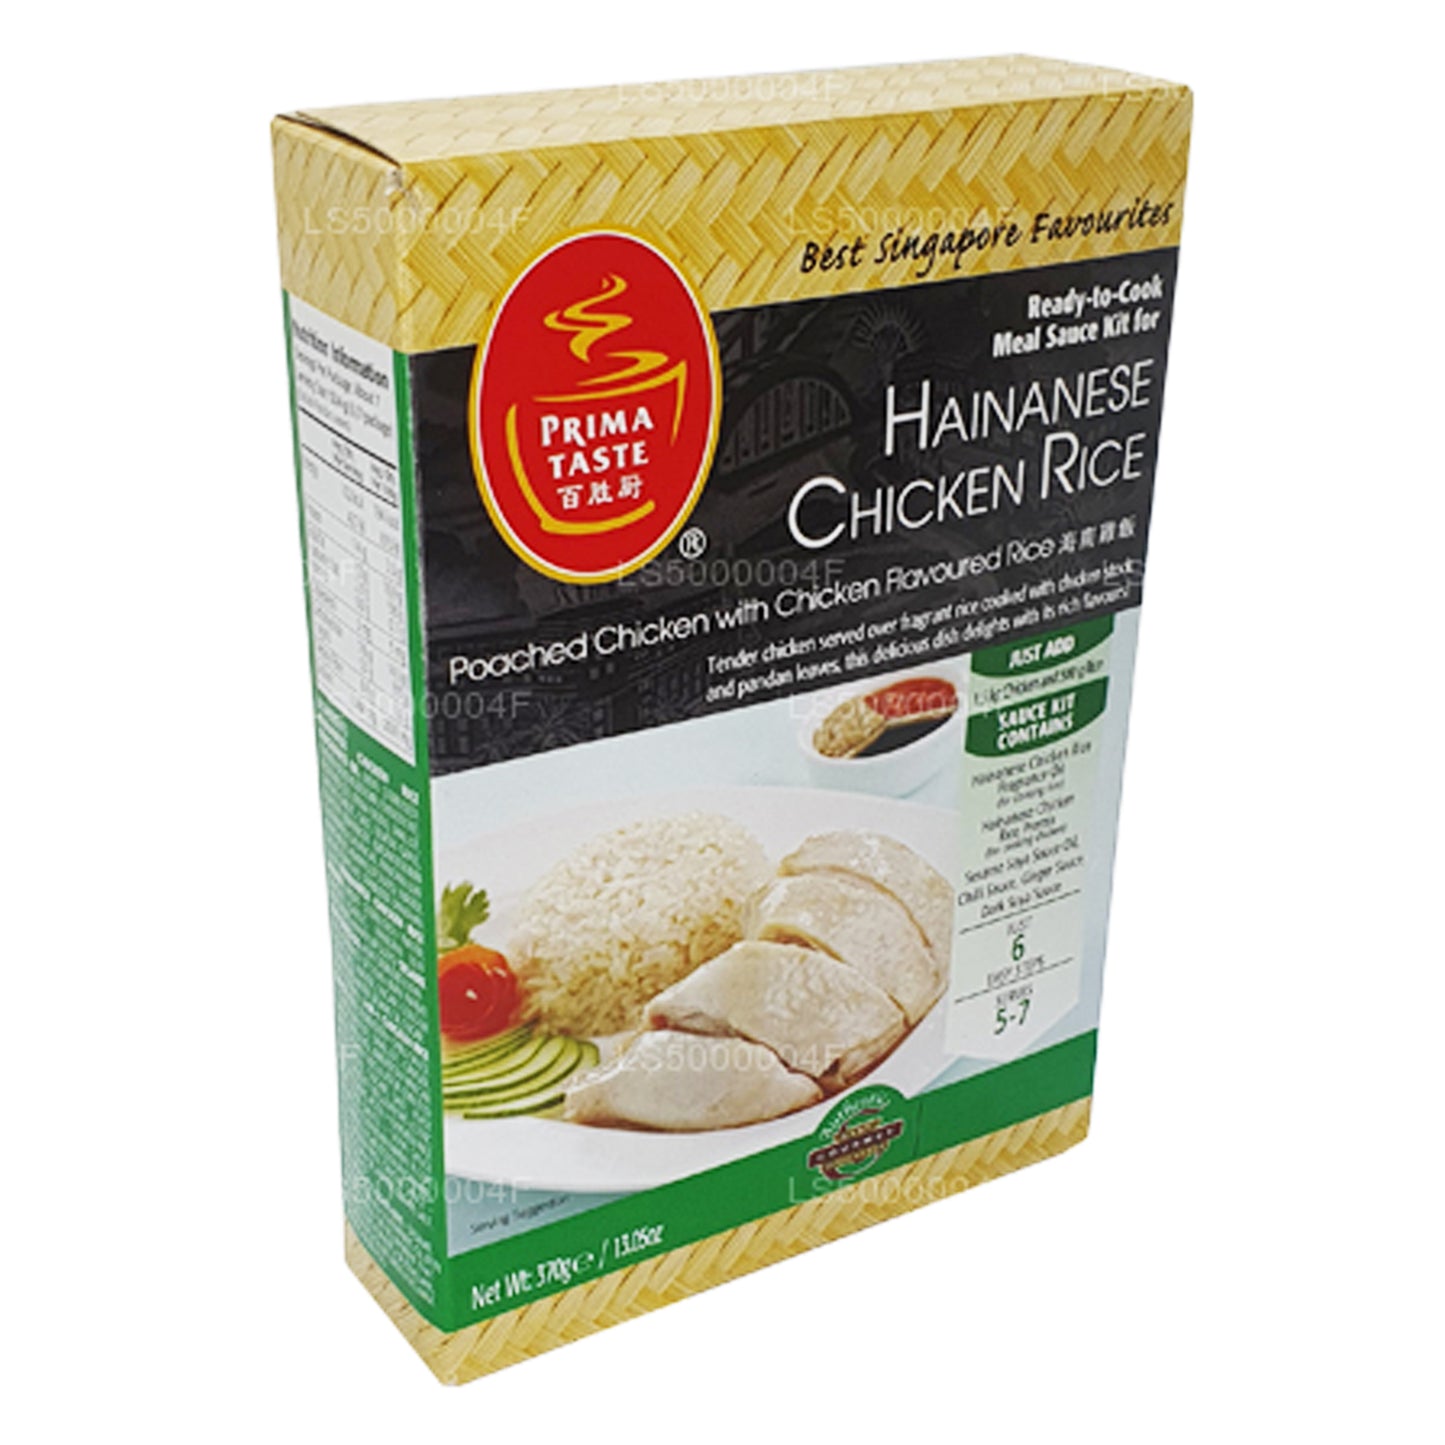 Prima Taste Hainanese Ryż Kurczak (370g)